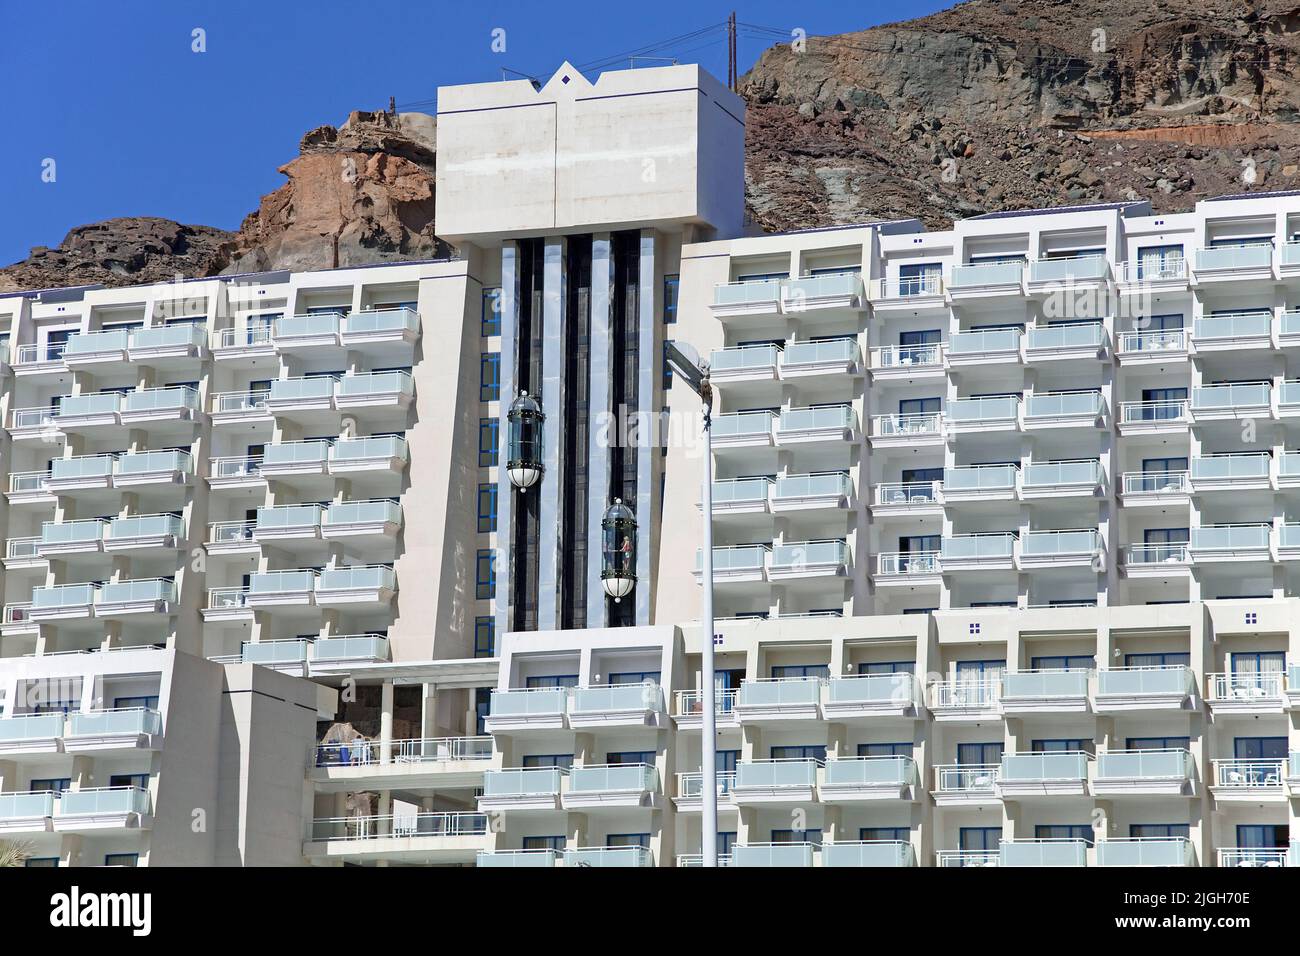 Ascensor del hotel, gran complejo hotelero en Taurito, Gran Canaria, Islas Canarias, España, Europa Foto de stock